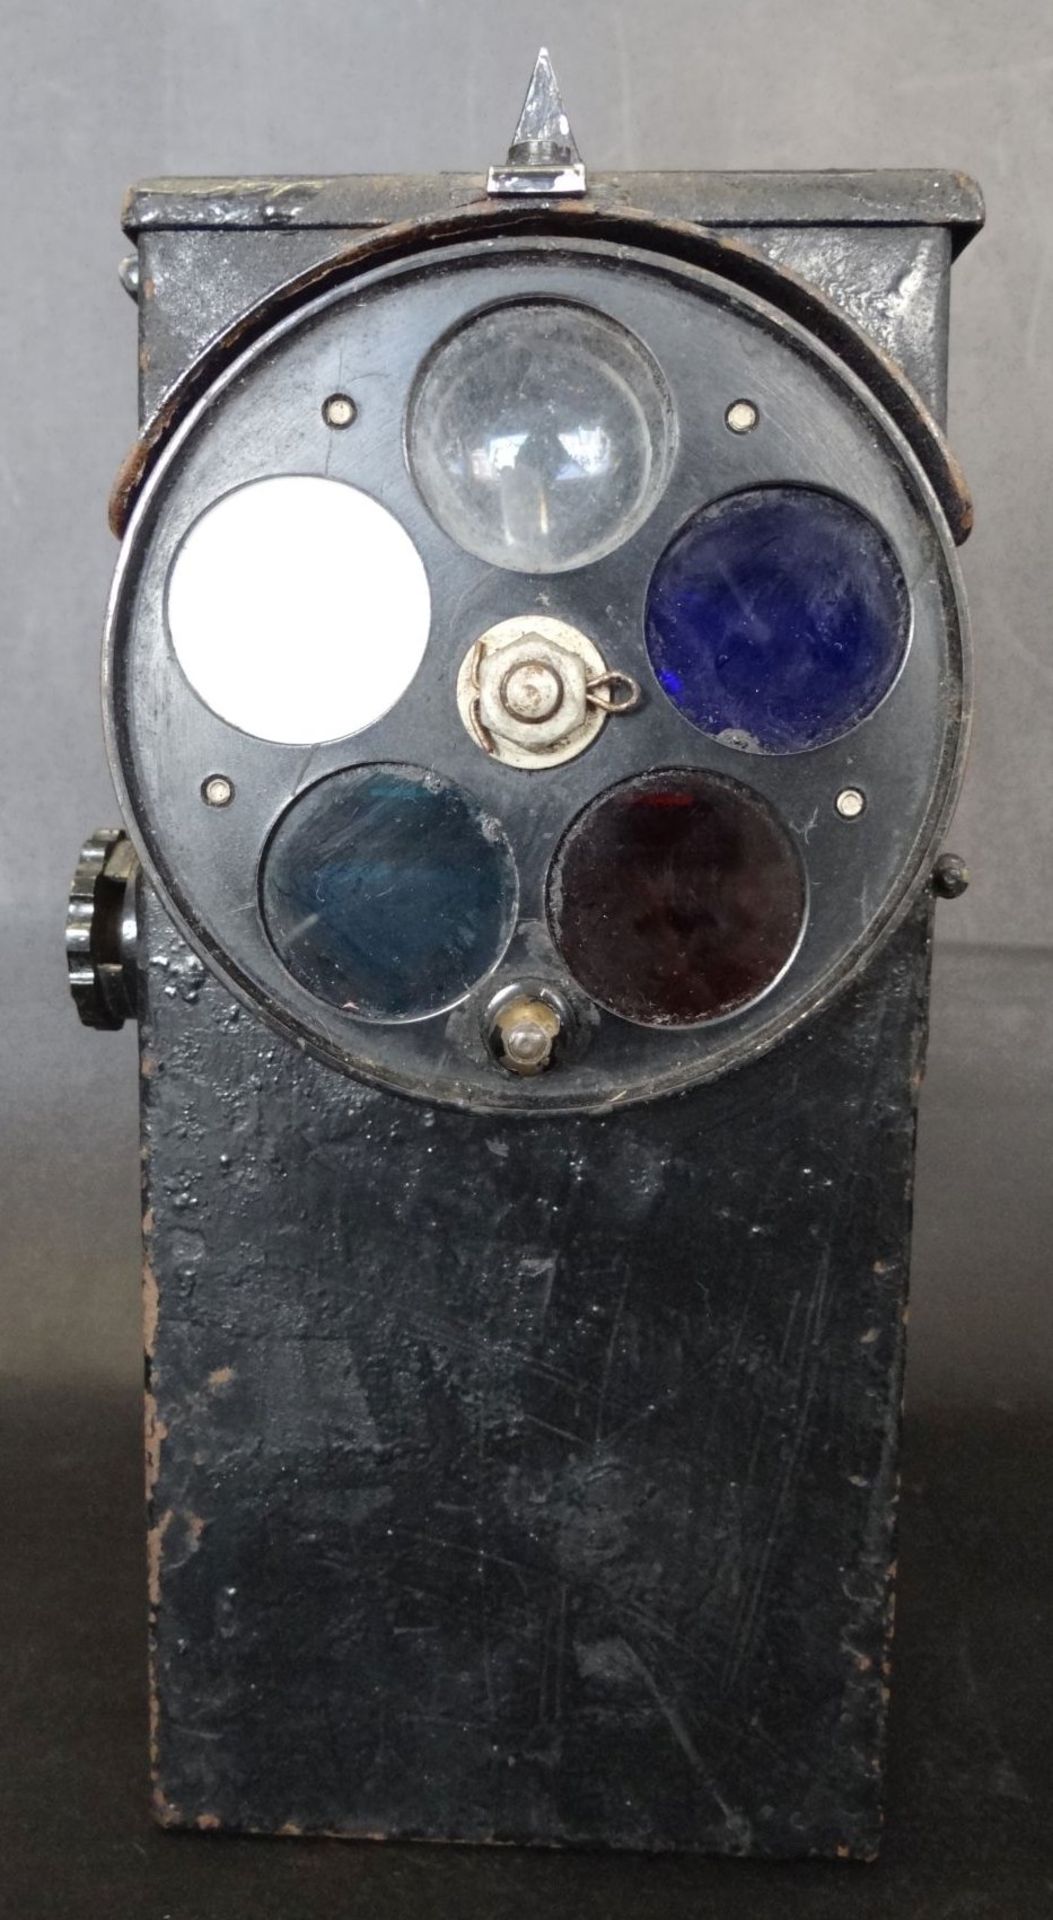 Hand-Signallampe mit Batteriebetrieb, Metall mit Holzgriff, 1944, Kanada, H-19 cm, 14x9 cm,